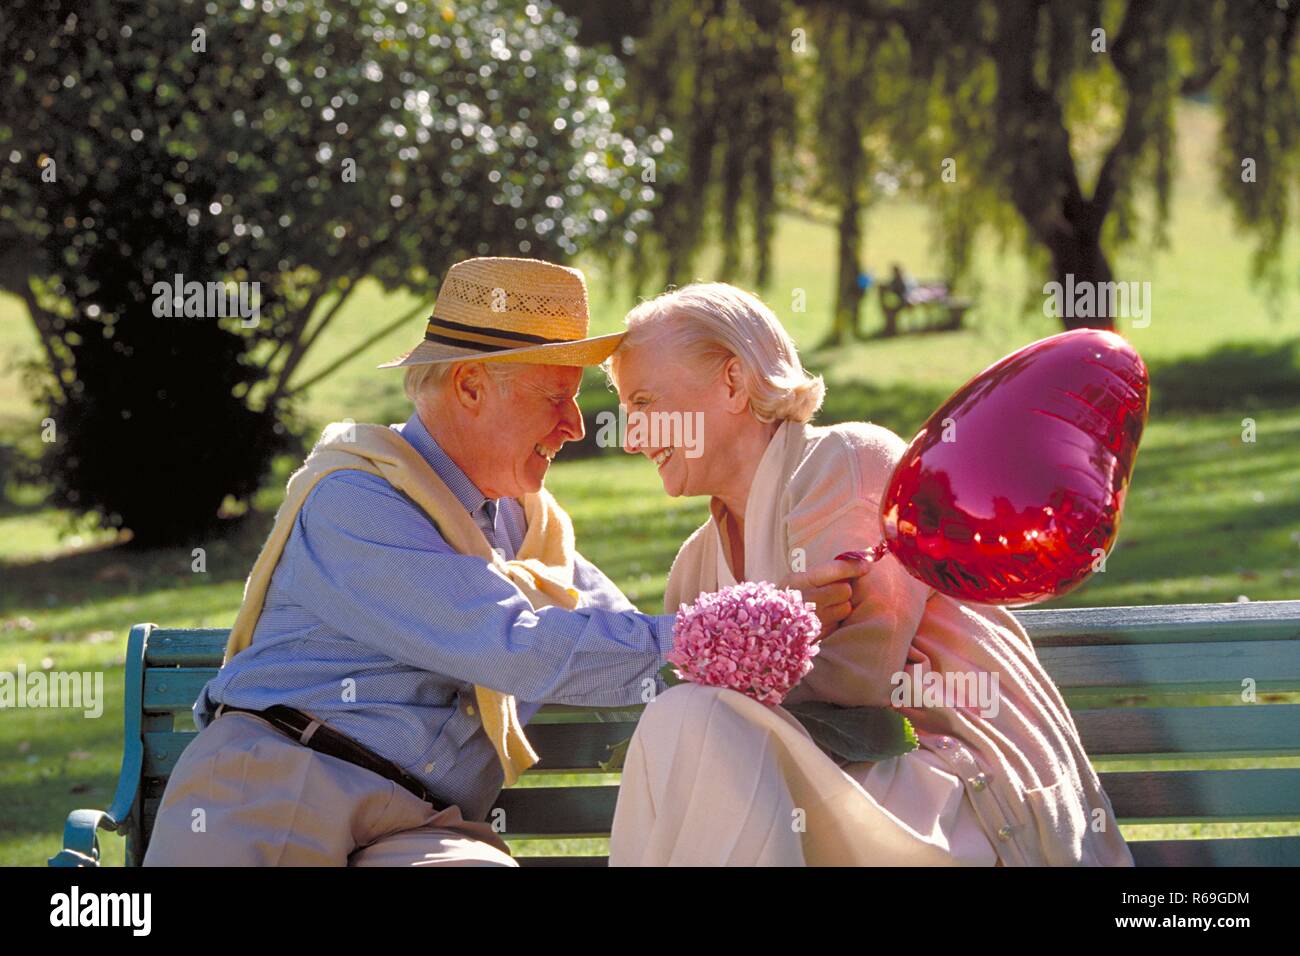 Parkszene, Outdoor, Halbfigur, Seniorenpaar bekleidet mit heller Kleidung, er mit Strohhut, sitzt flirtend Mit einem roten herzfoermigen Luftballon und einem Fliederzweig auf einer Parkbank Foto Stock